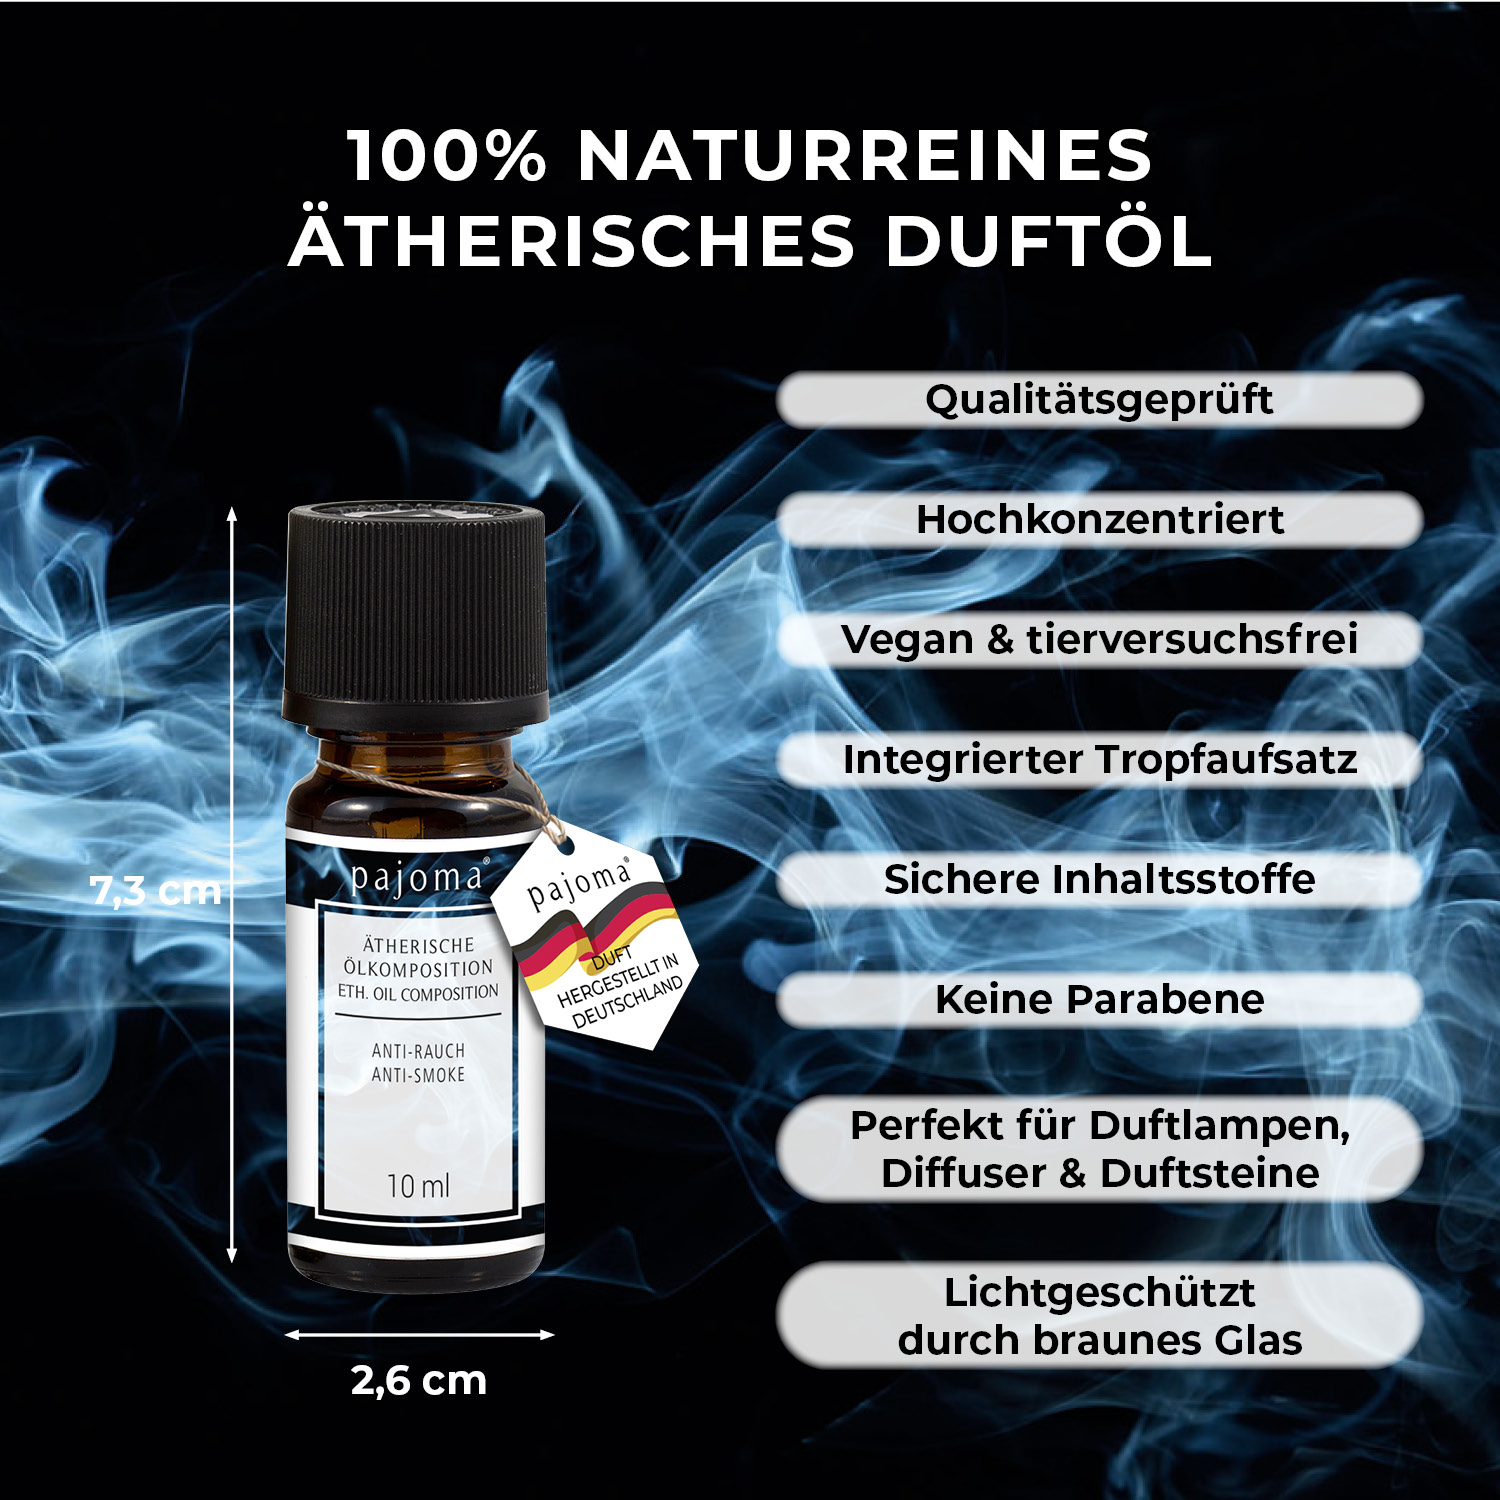 10ML Natur Rein Ätherische Öle Aromatherapie Duftöl für Diffuser